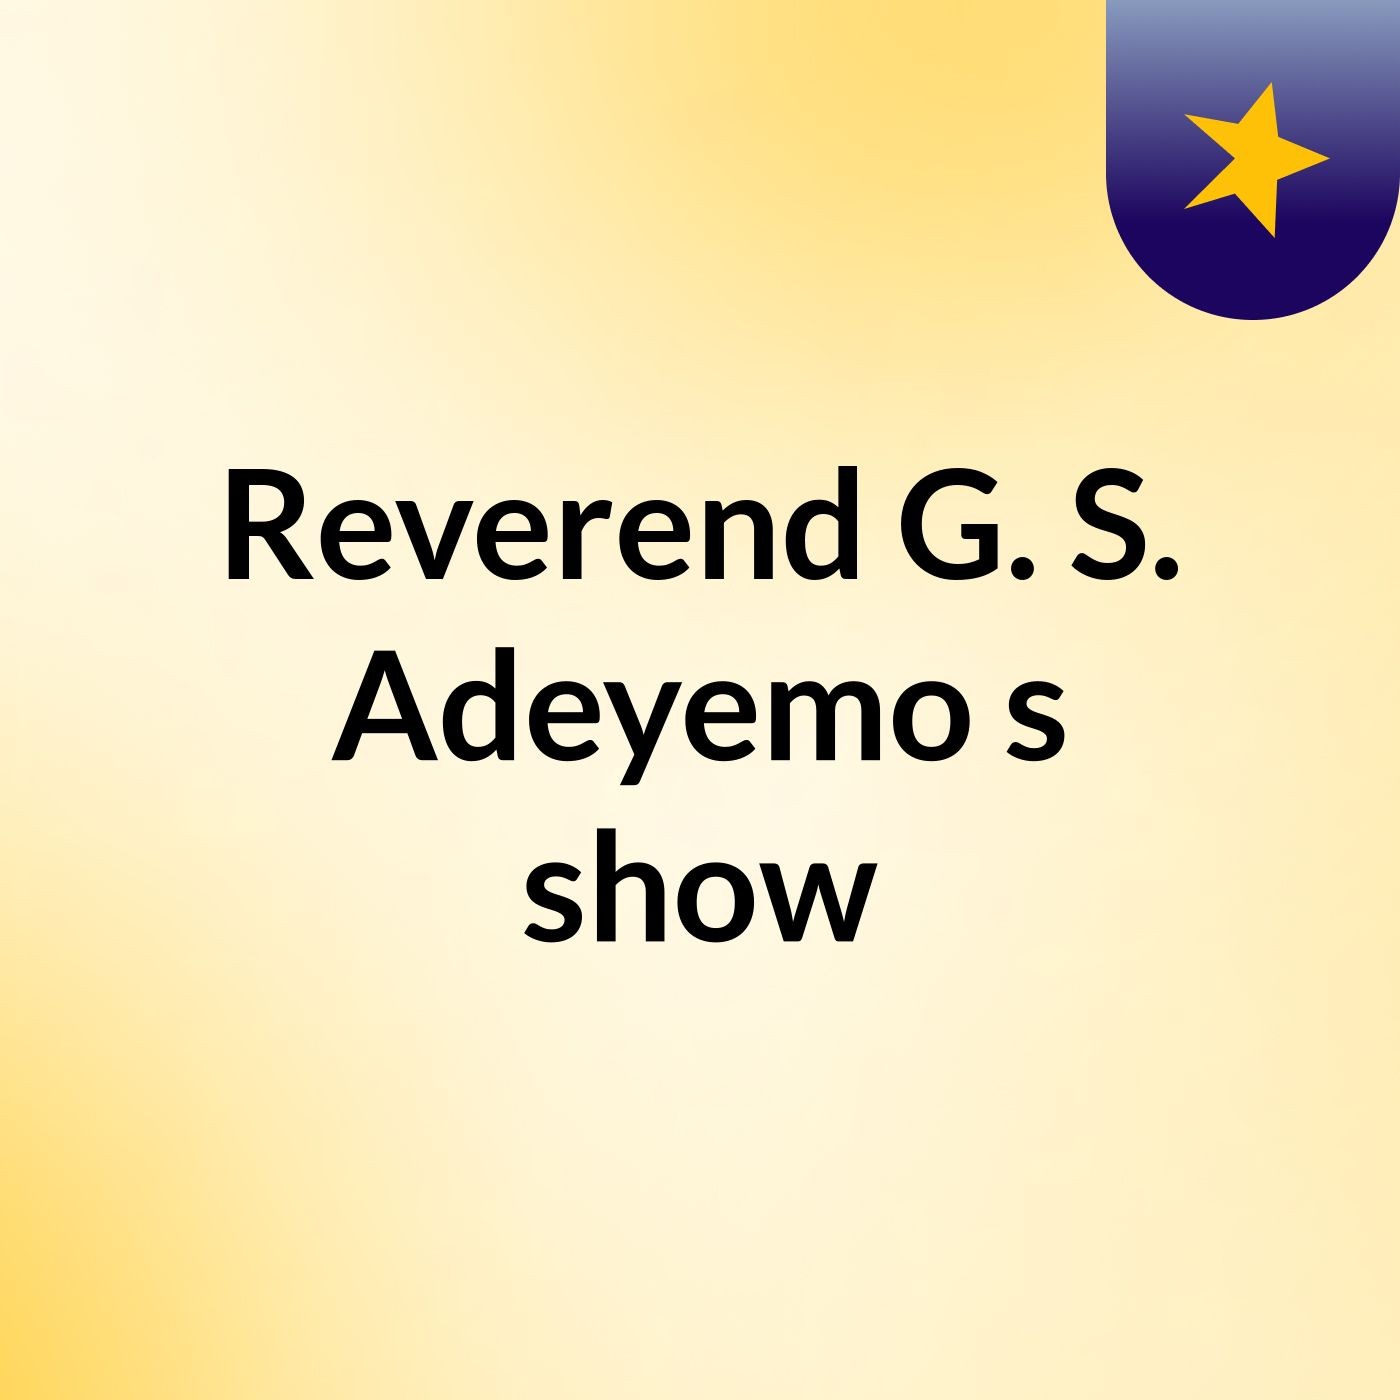 Reverend G. S. Adeyemo's show